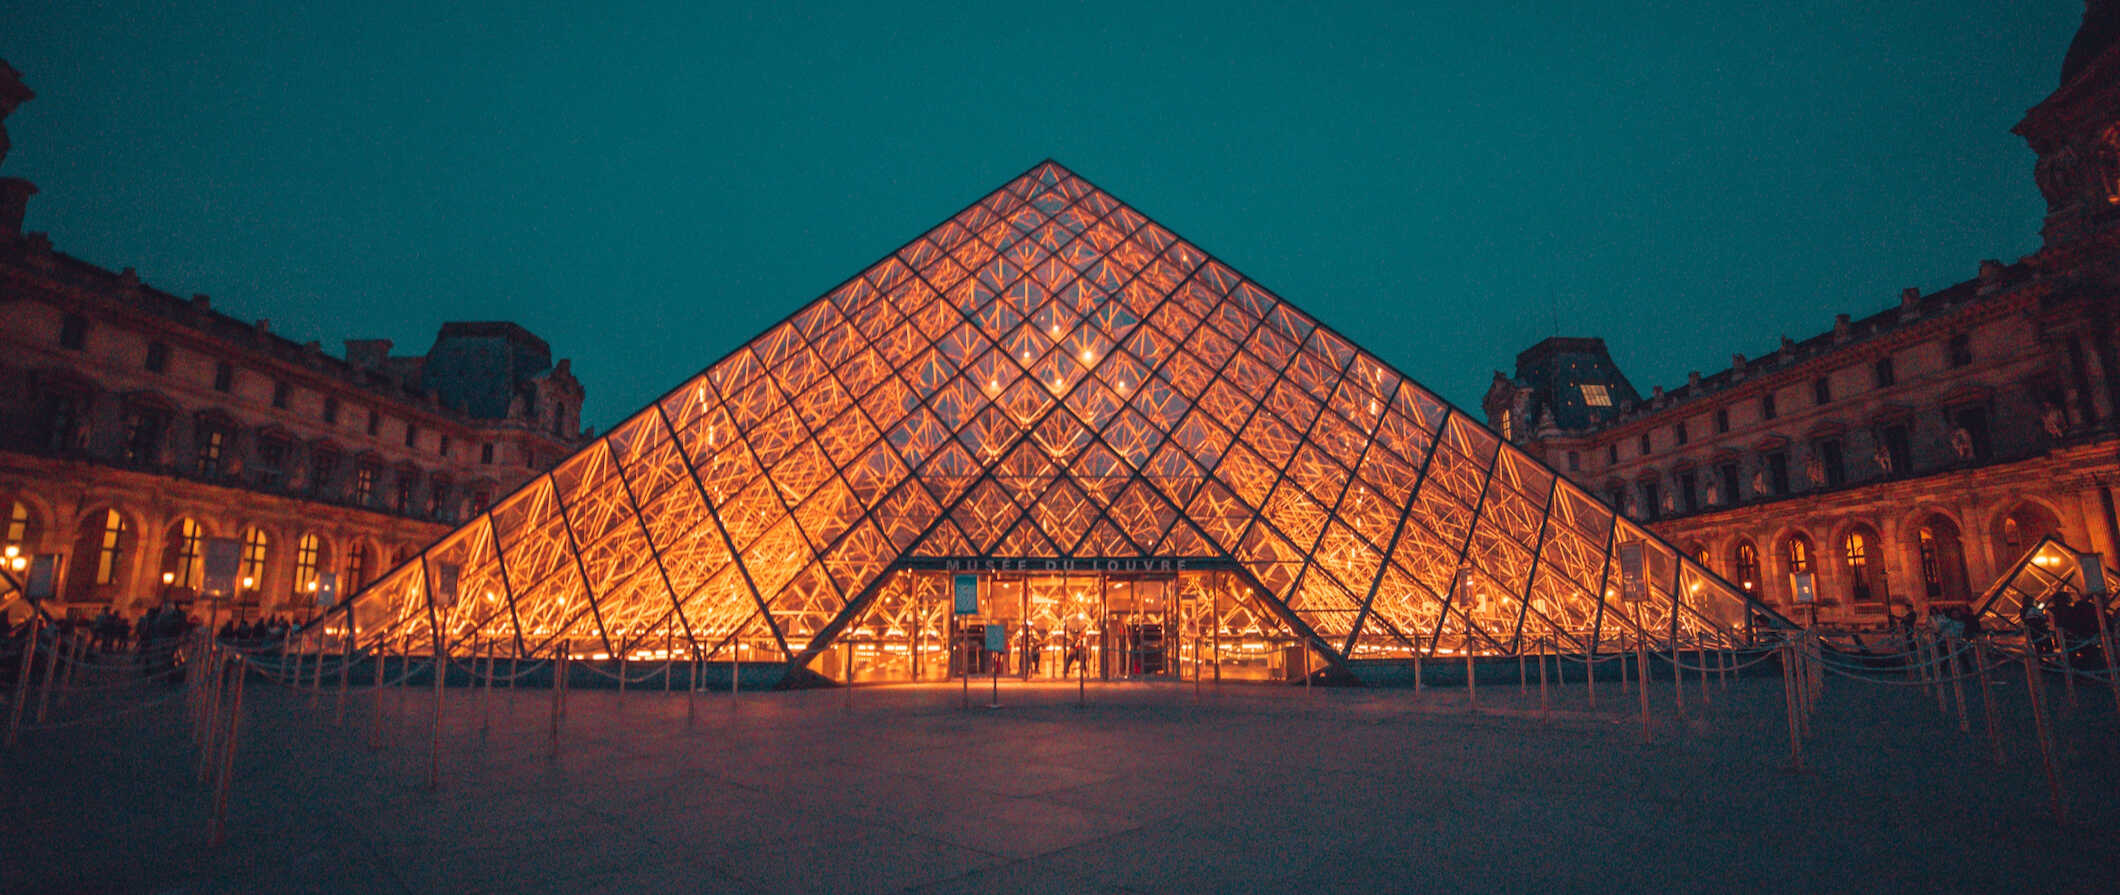 法国巴黎的卢浮宫金字塔在夜晚灯火通明